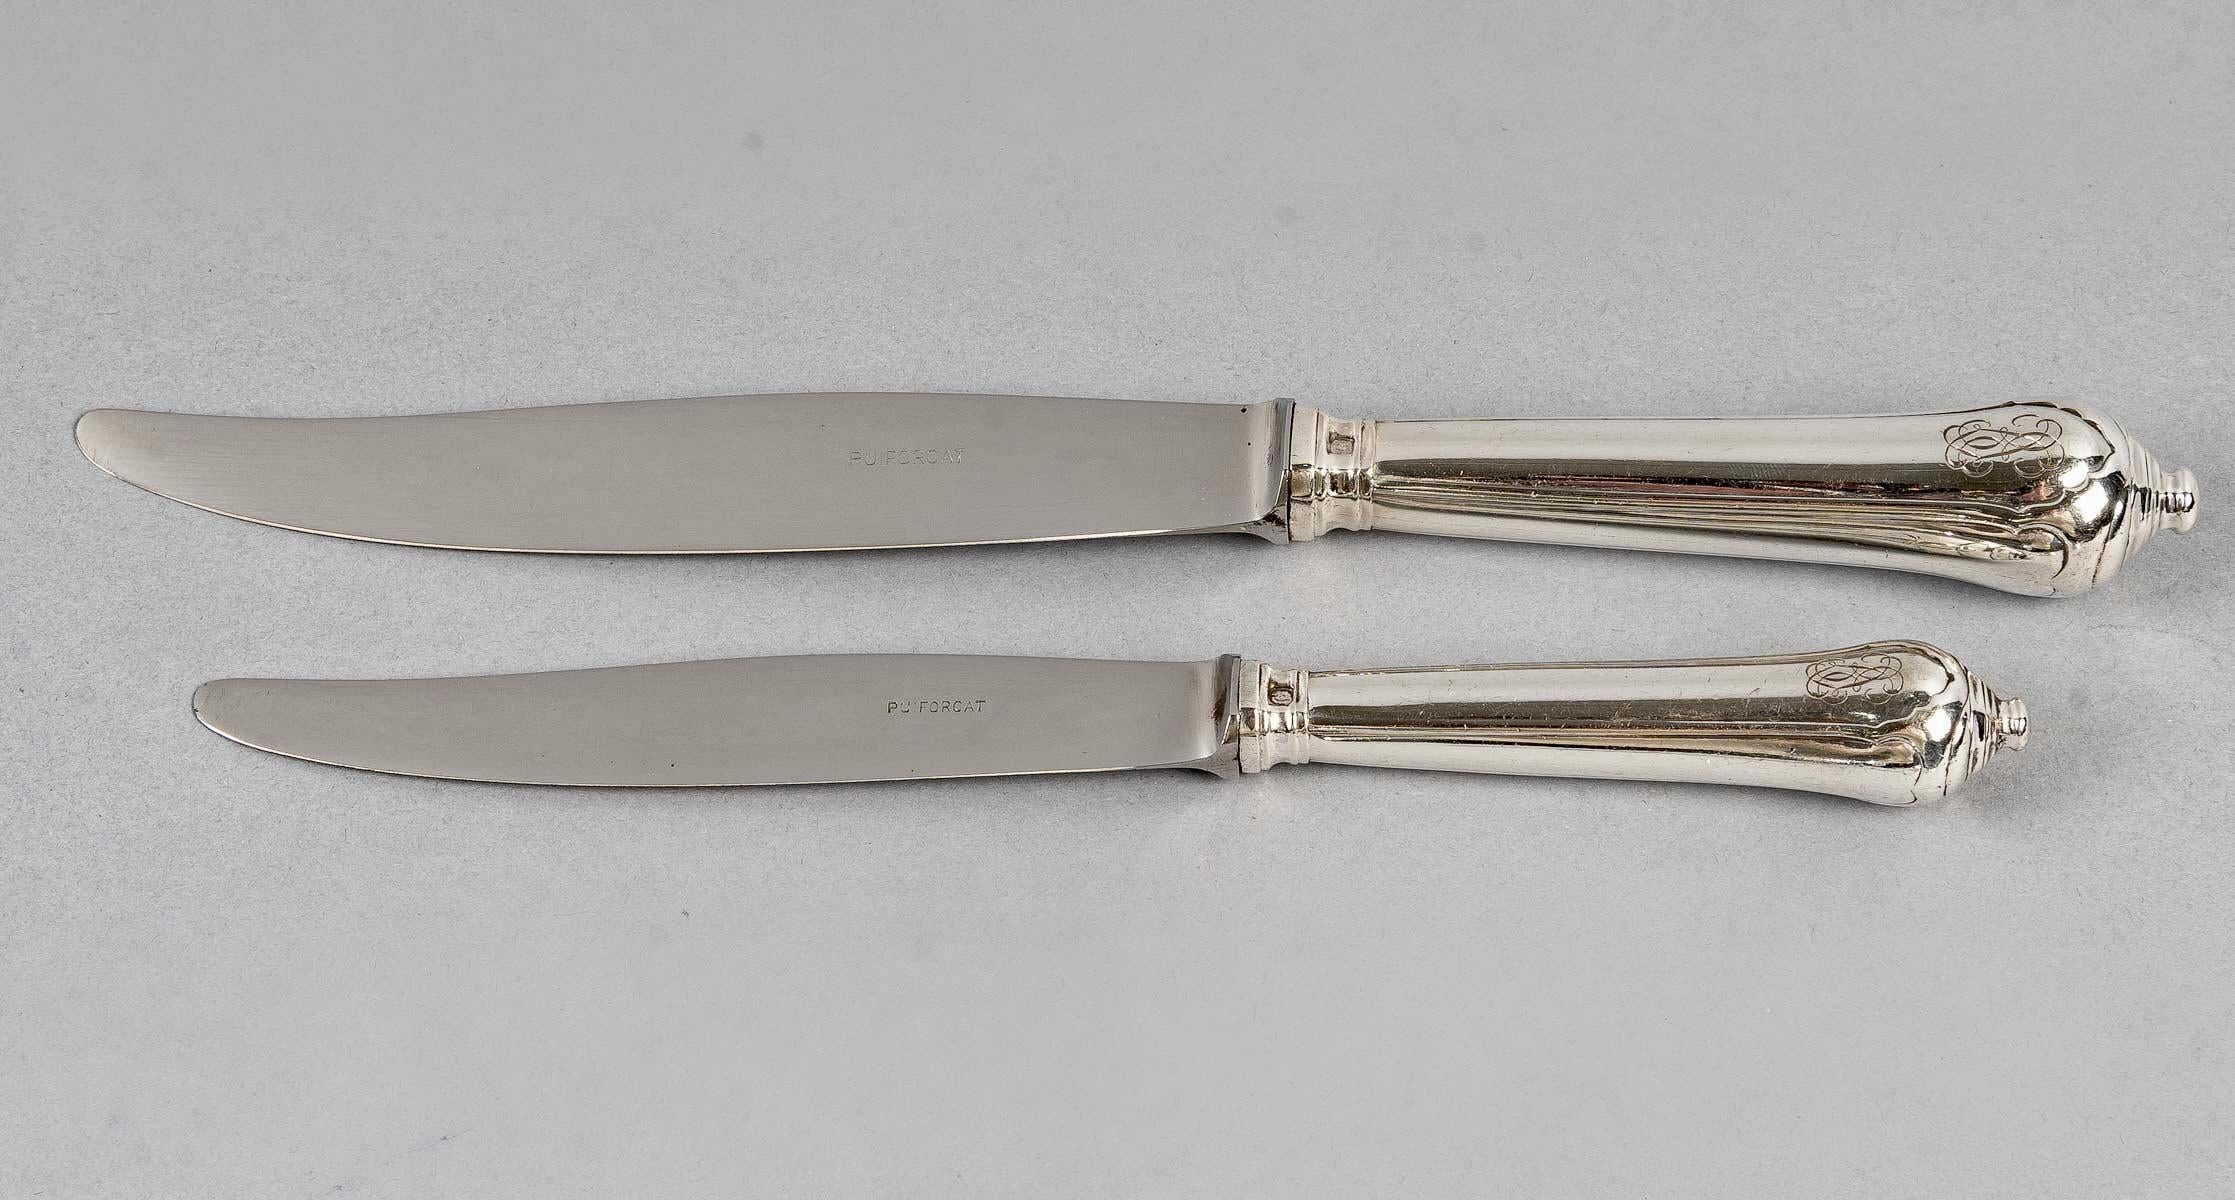 Puiforcat, Cutlery Flatware Set Noailles Sterling Silver, 116 Pieces 1